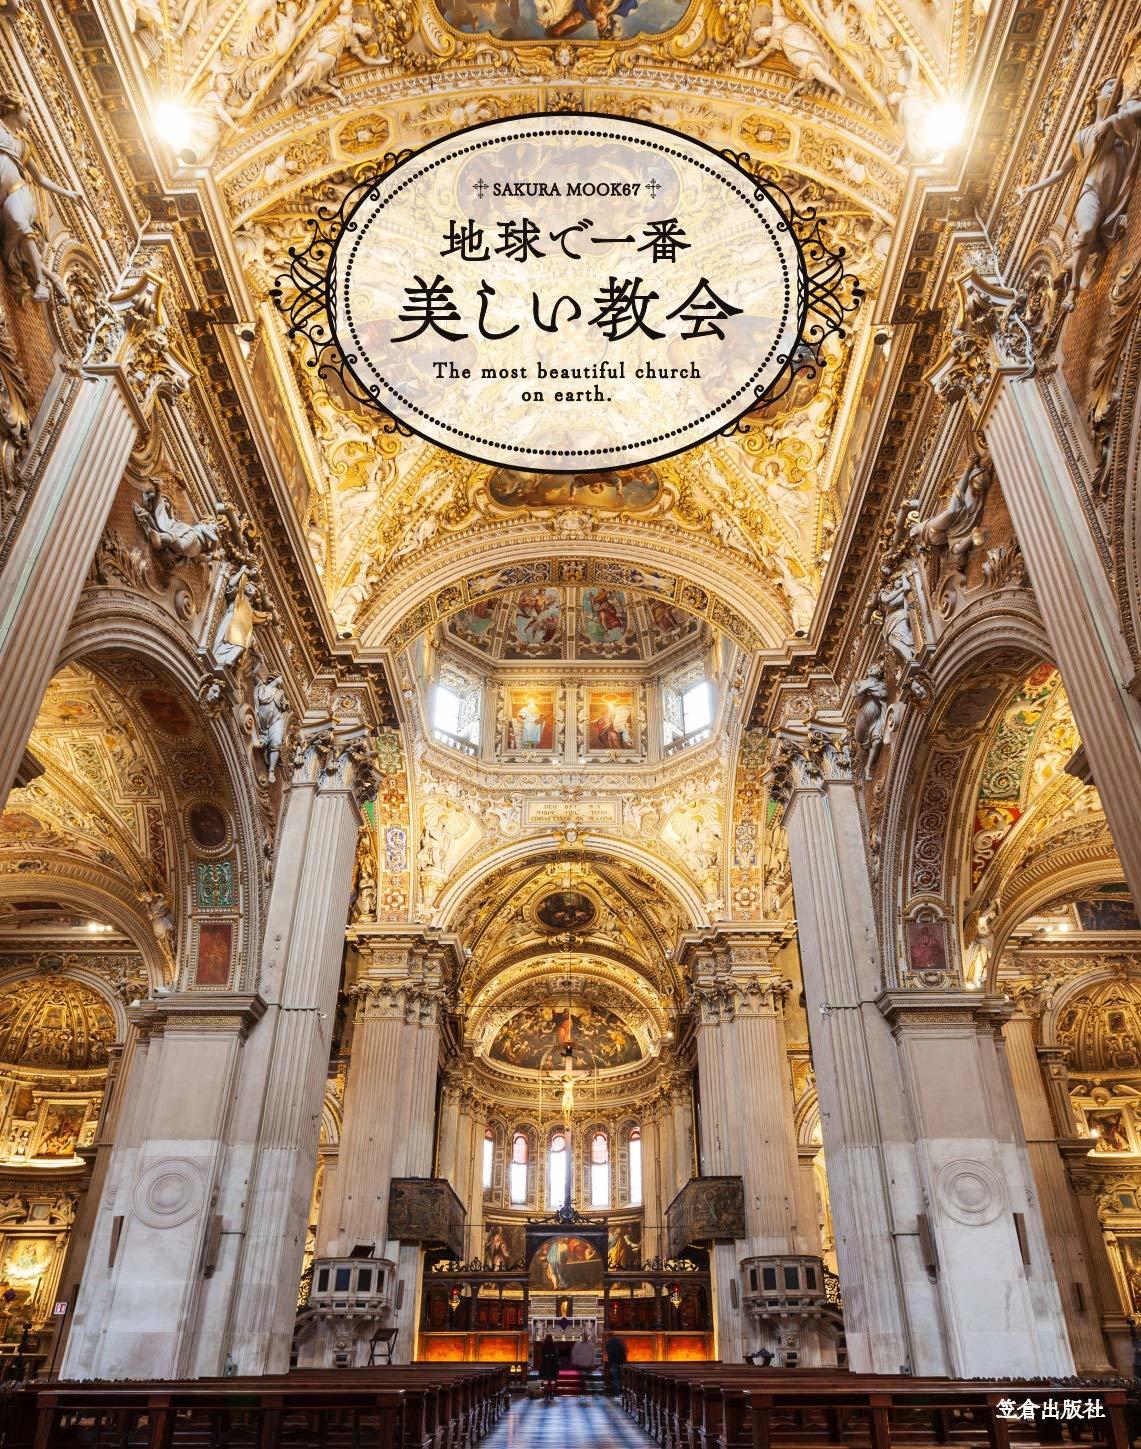 江戸川大学メディアコミュニケーション学部の学生が編集を担当したムック本『地球で一番美しい教会』が出版